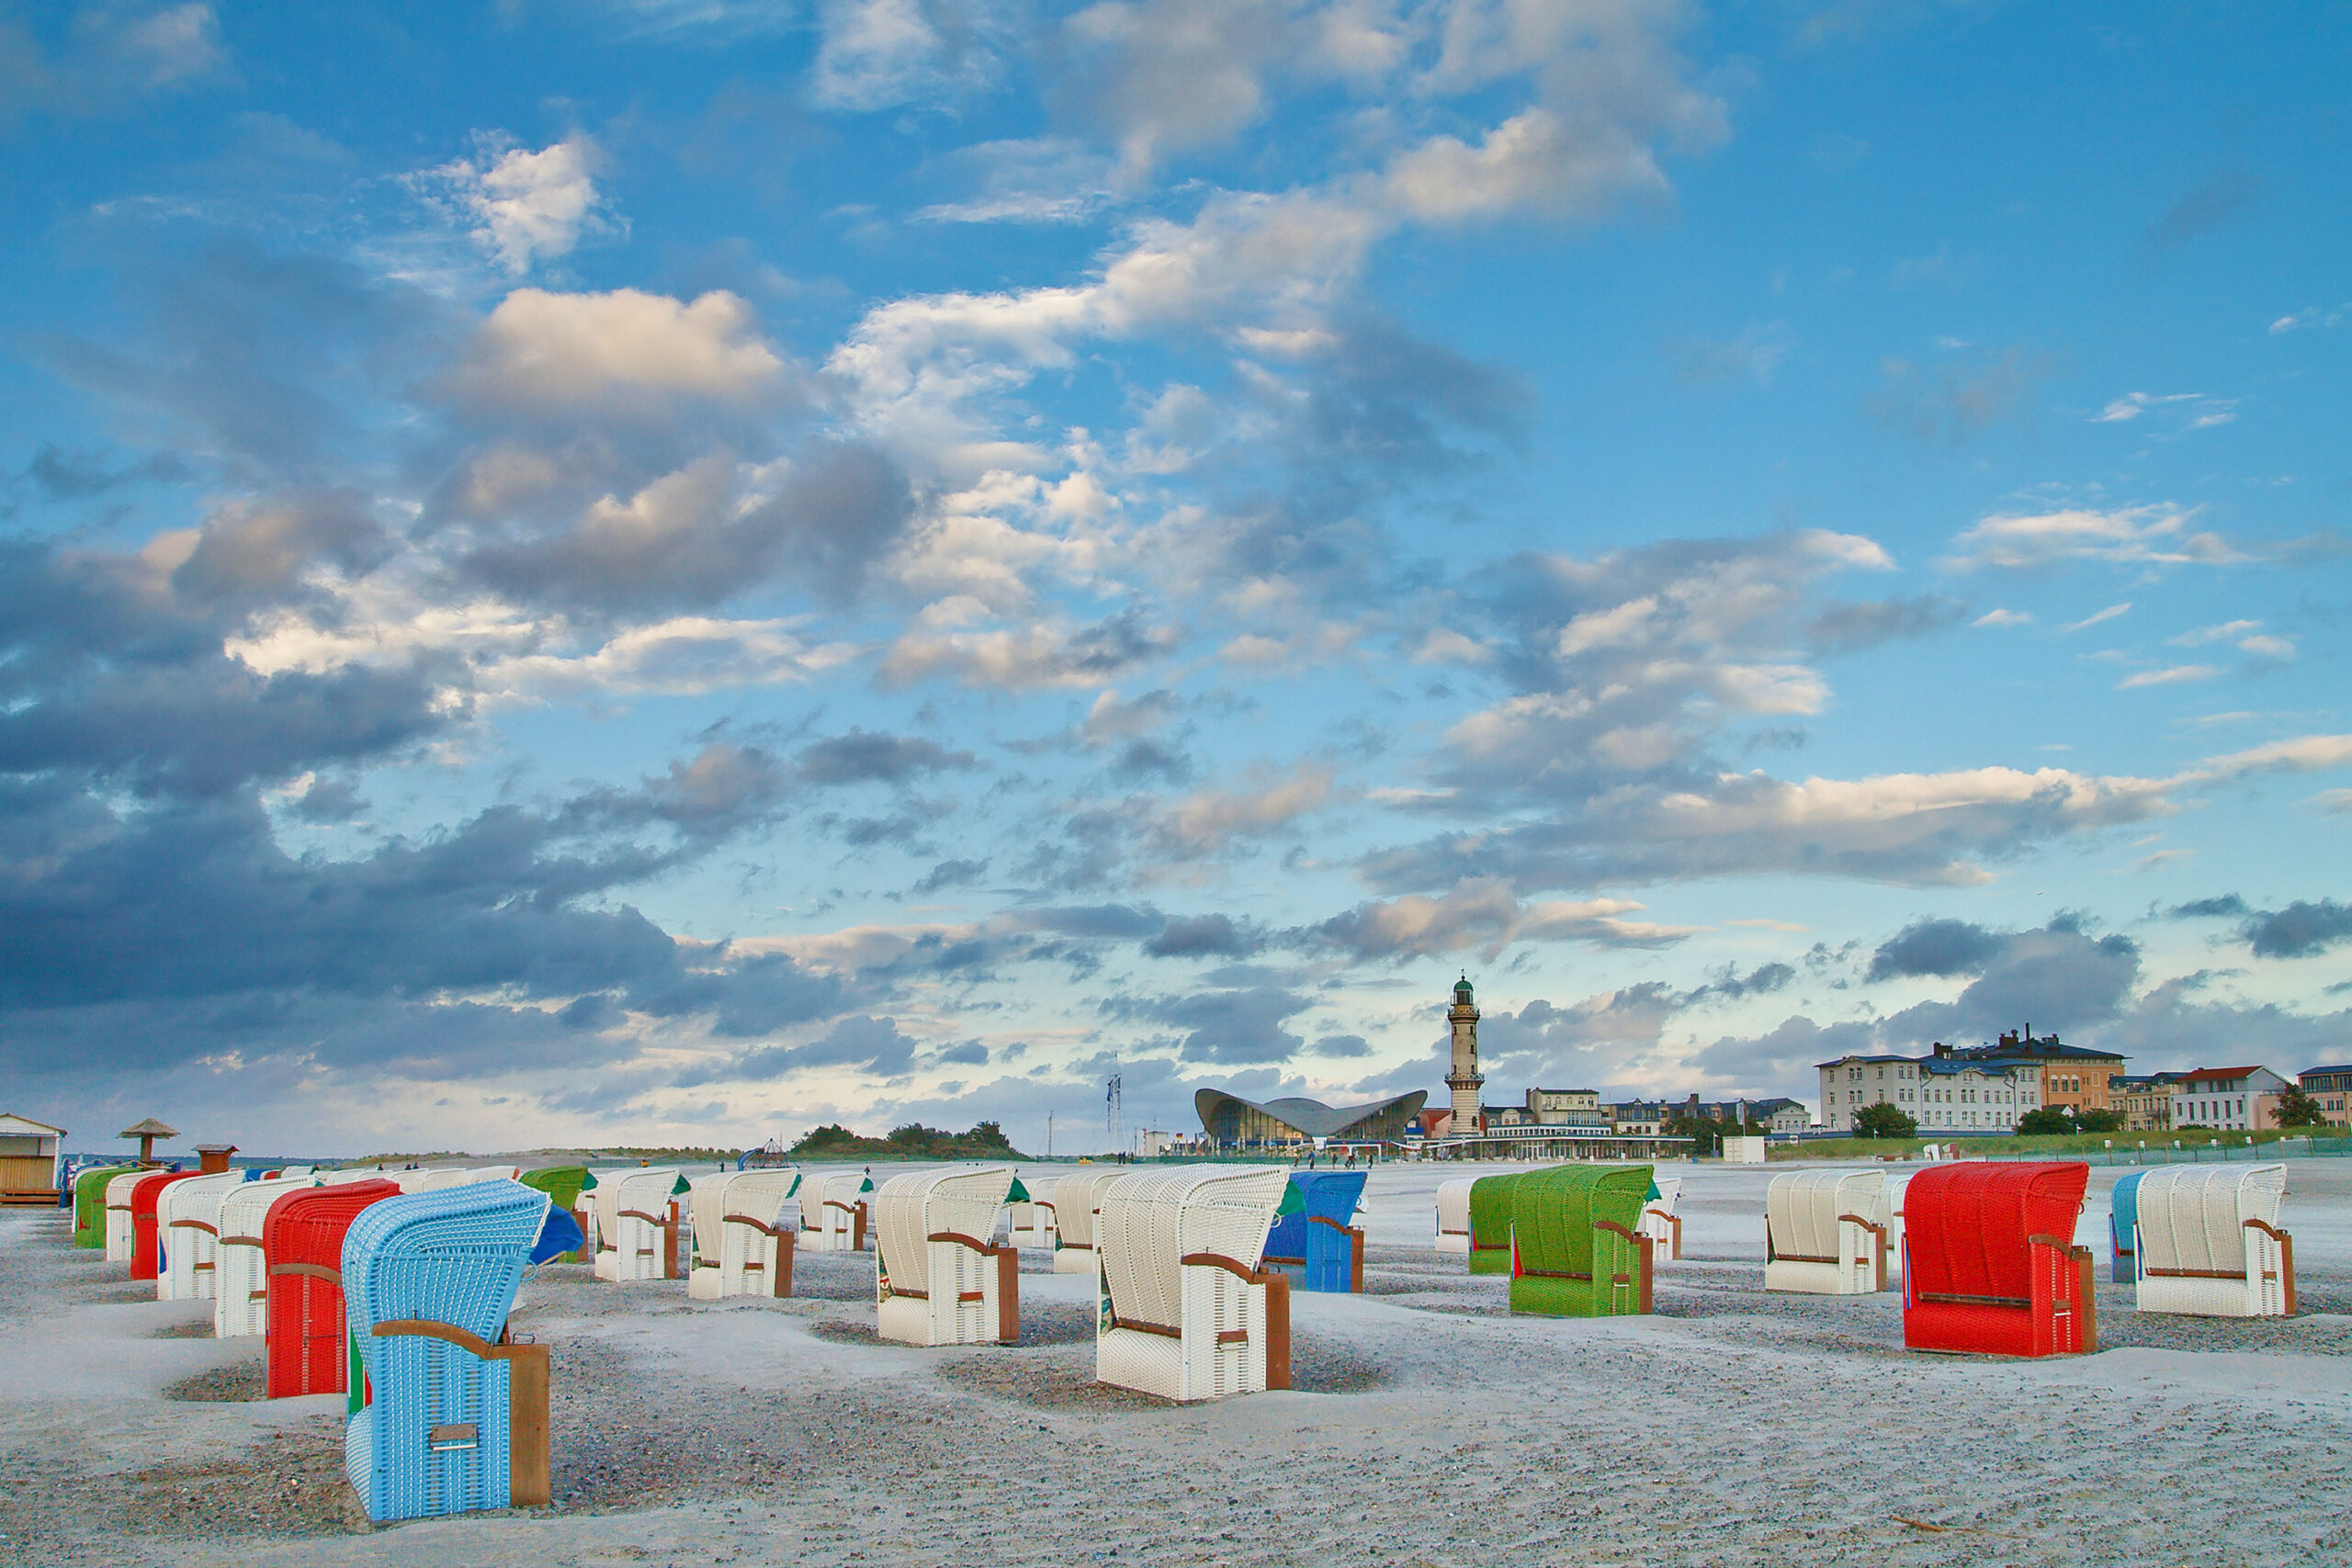 Strandkörbe am Strand von Warnemünde - Warnemünder Teepott und Leuchtturm im Hintergrund